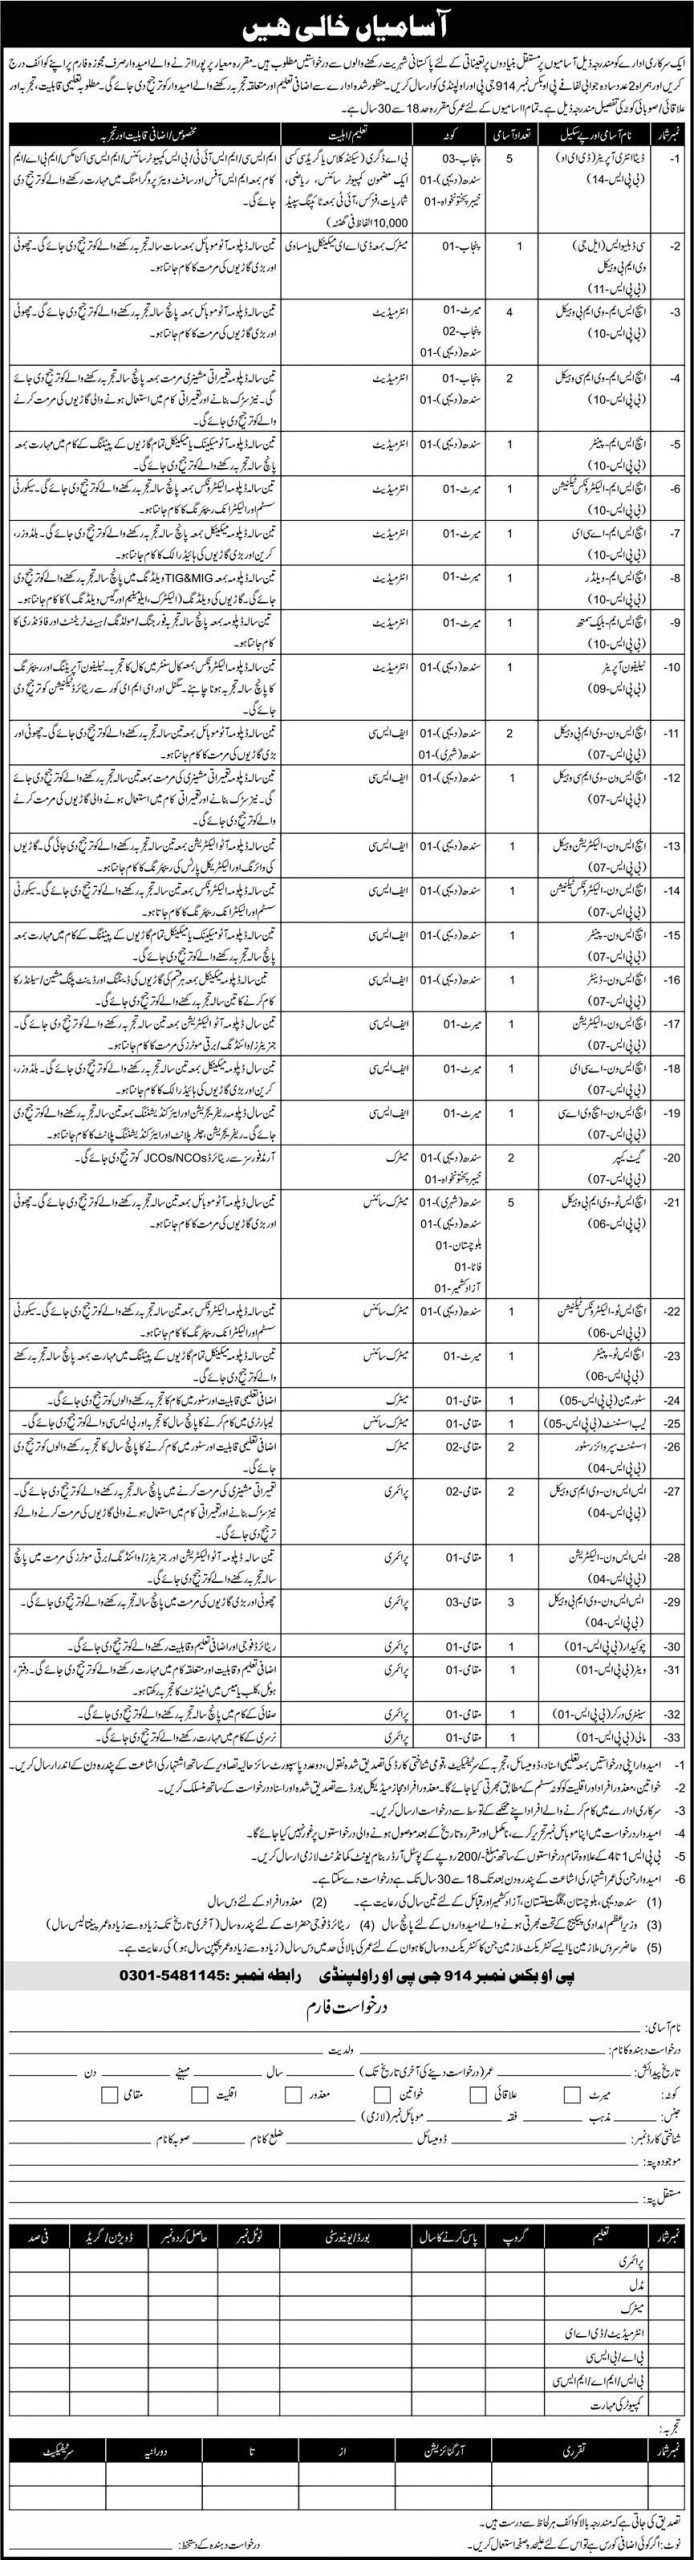 Jobs in P.O Box No 914 GPO Rawalpindi (27-11-2021)